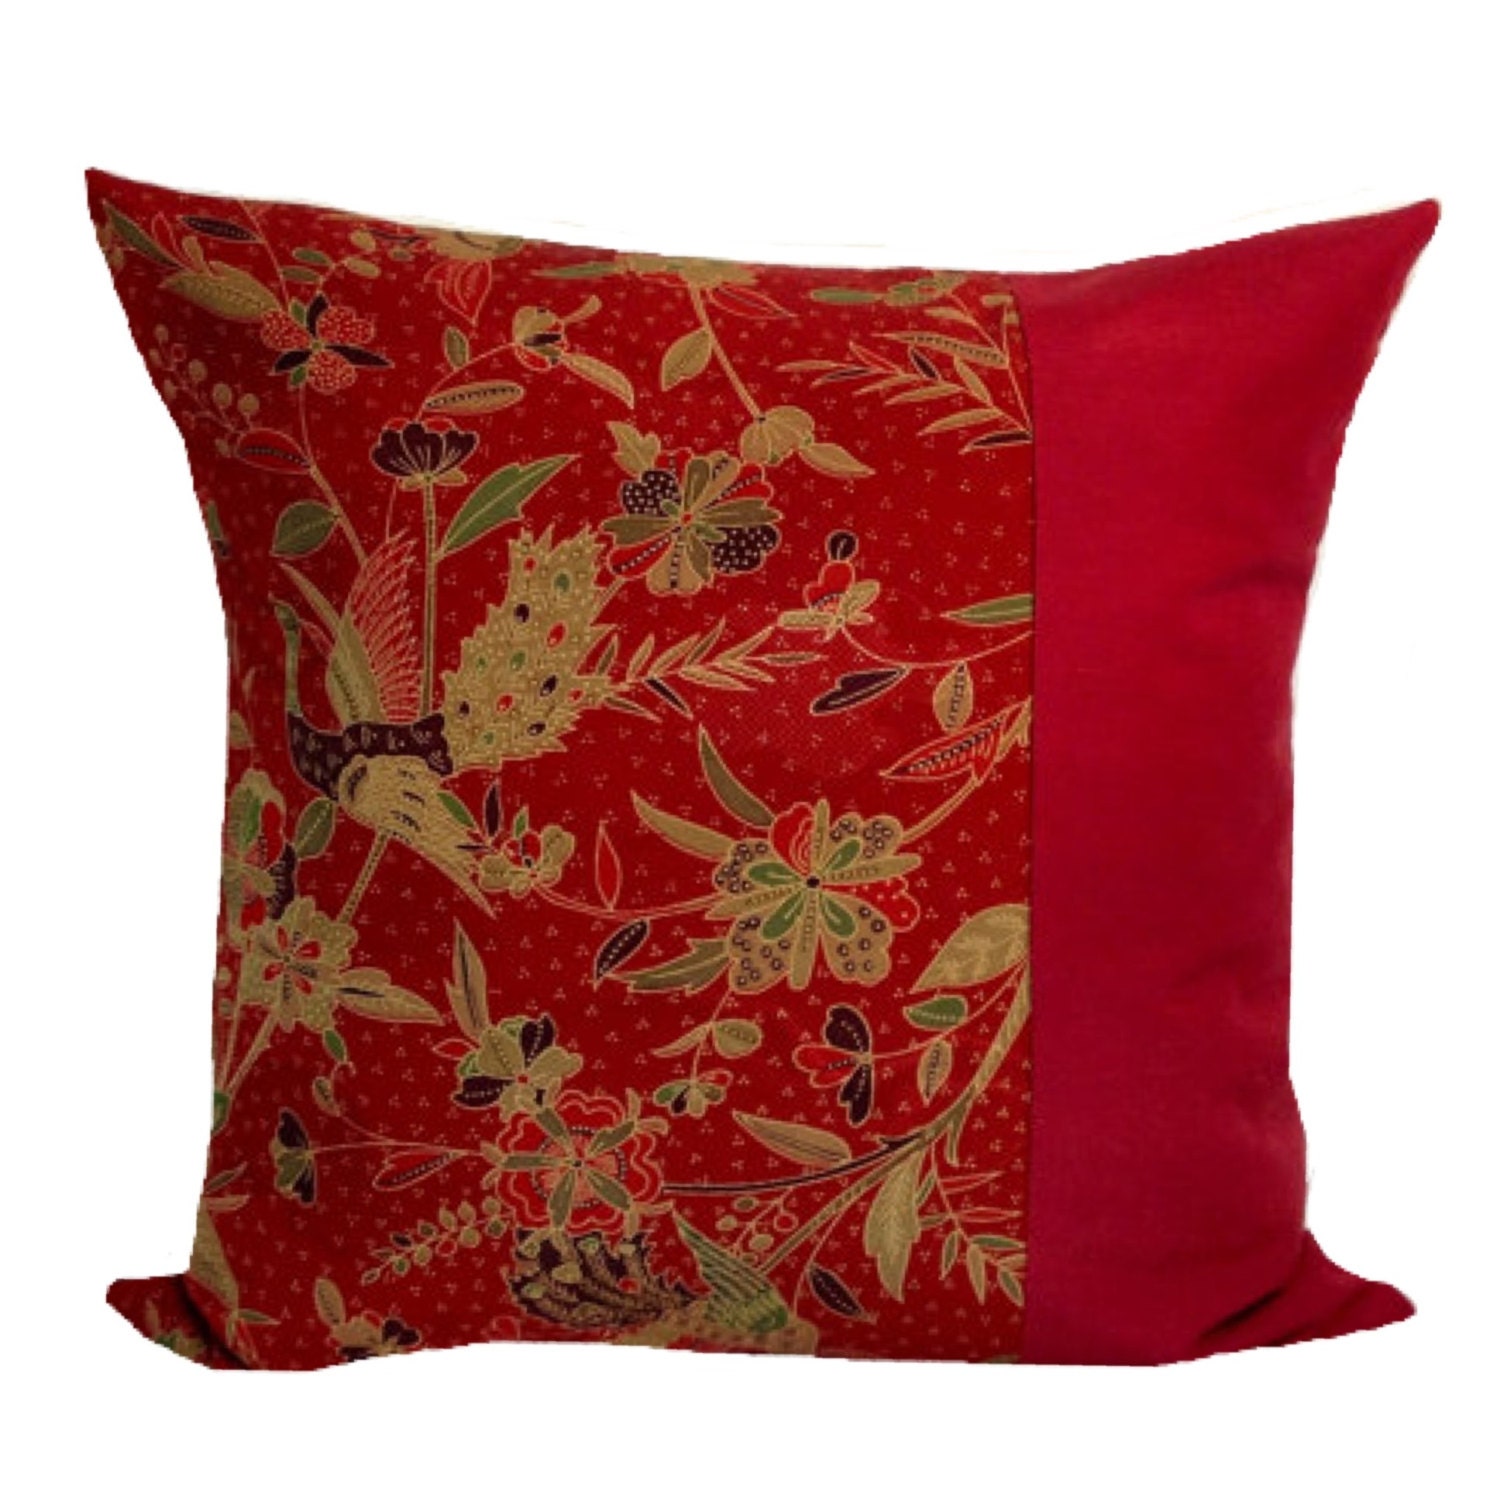 decorated throw pillows Asian